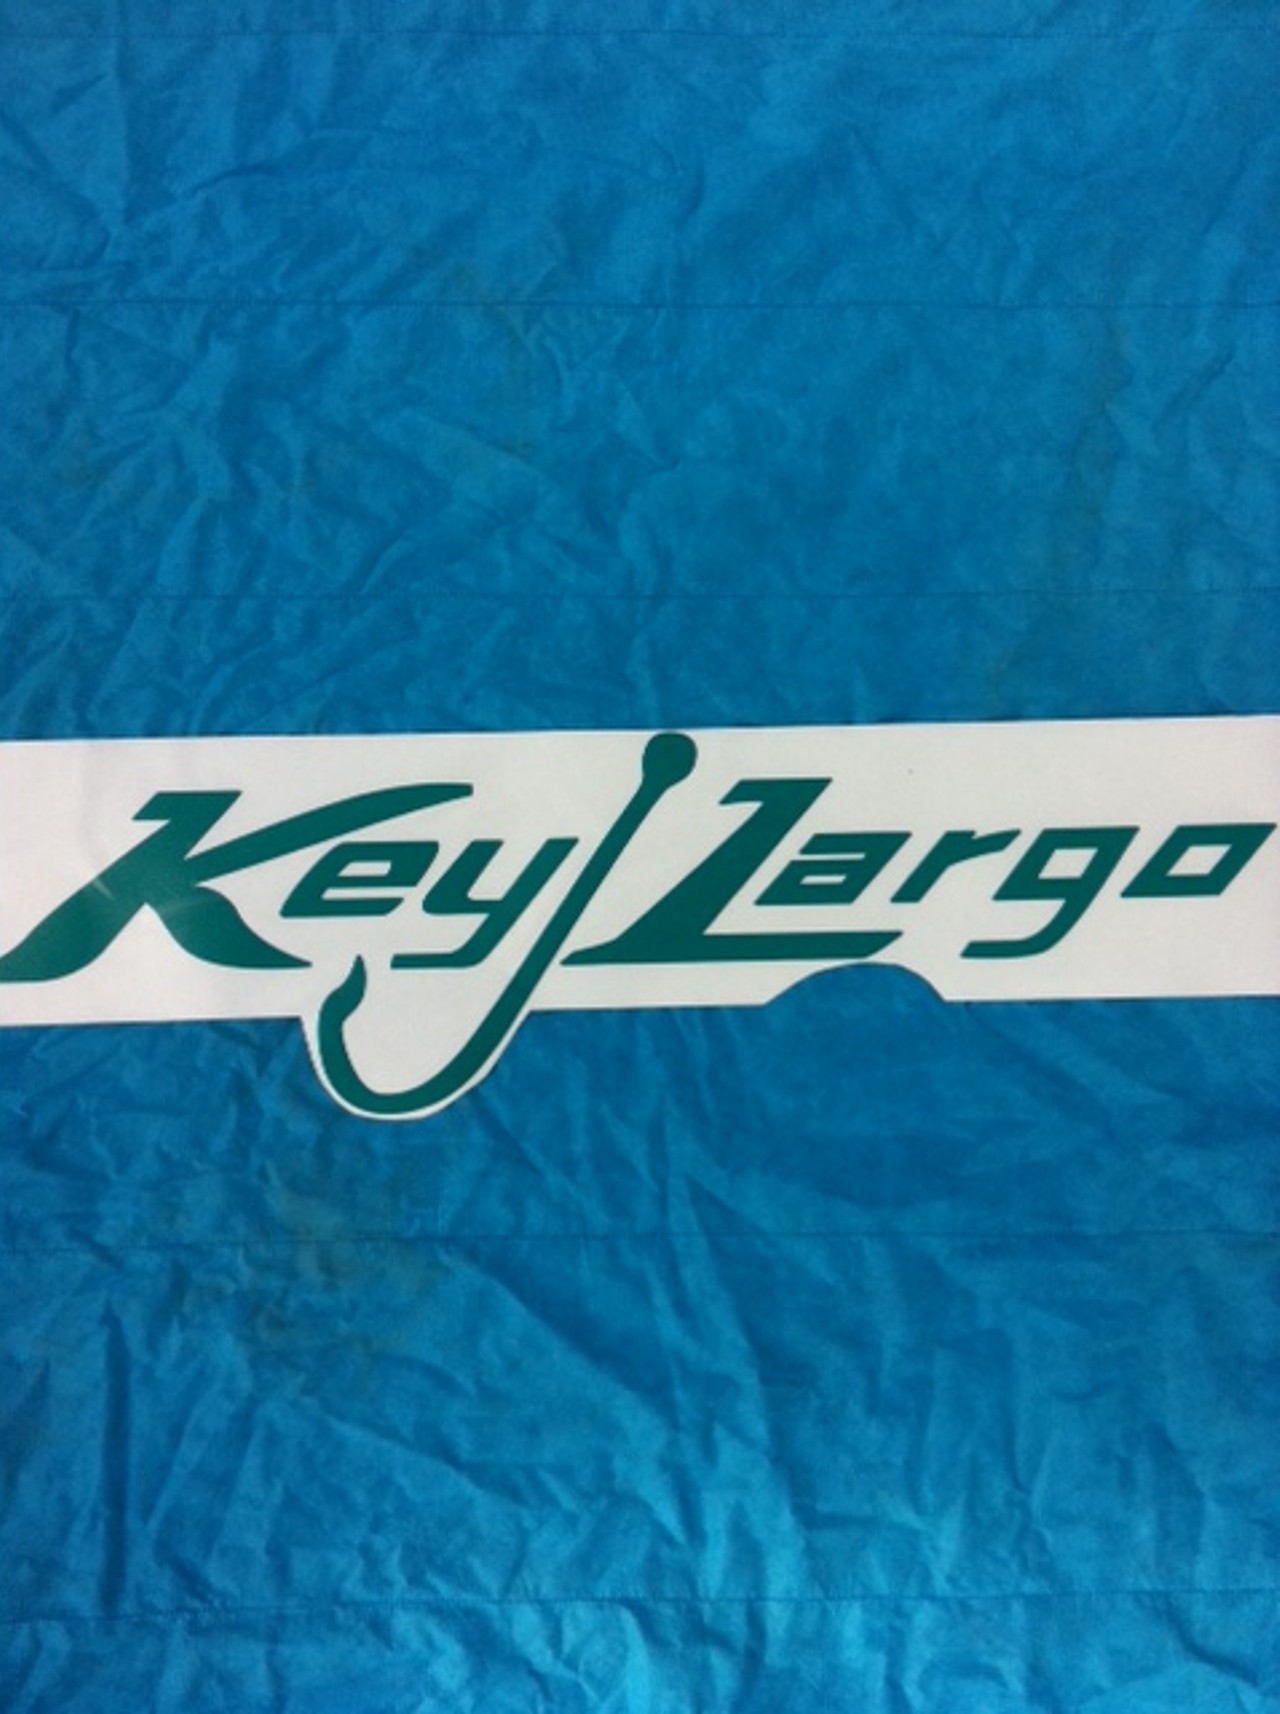 Key Largo console seat bottom cushion 26x 13-1/2 - Key Largo